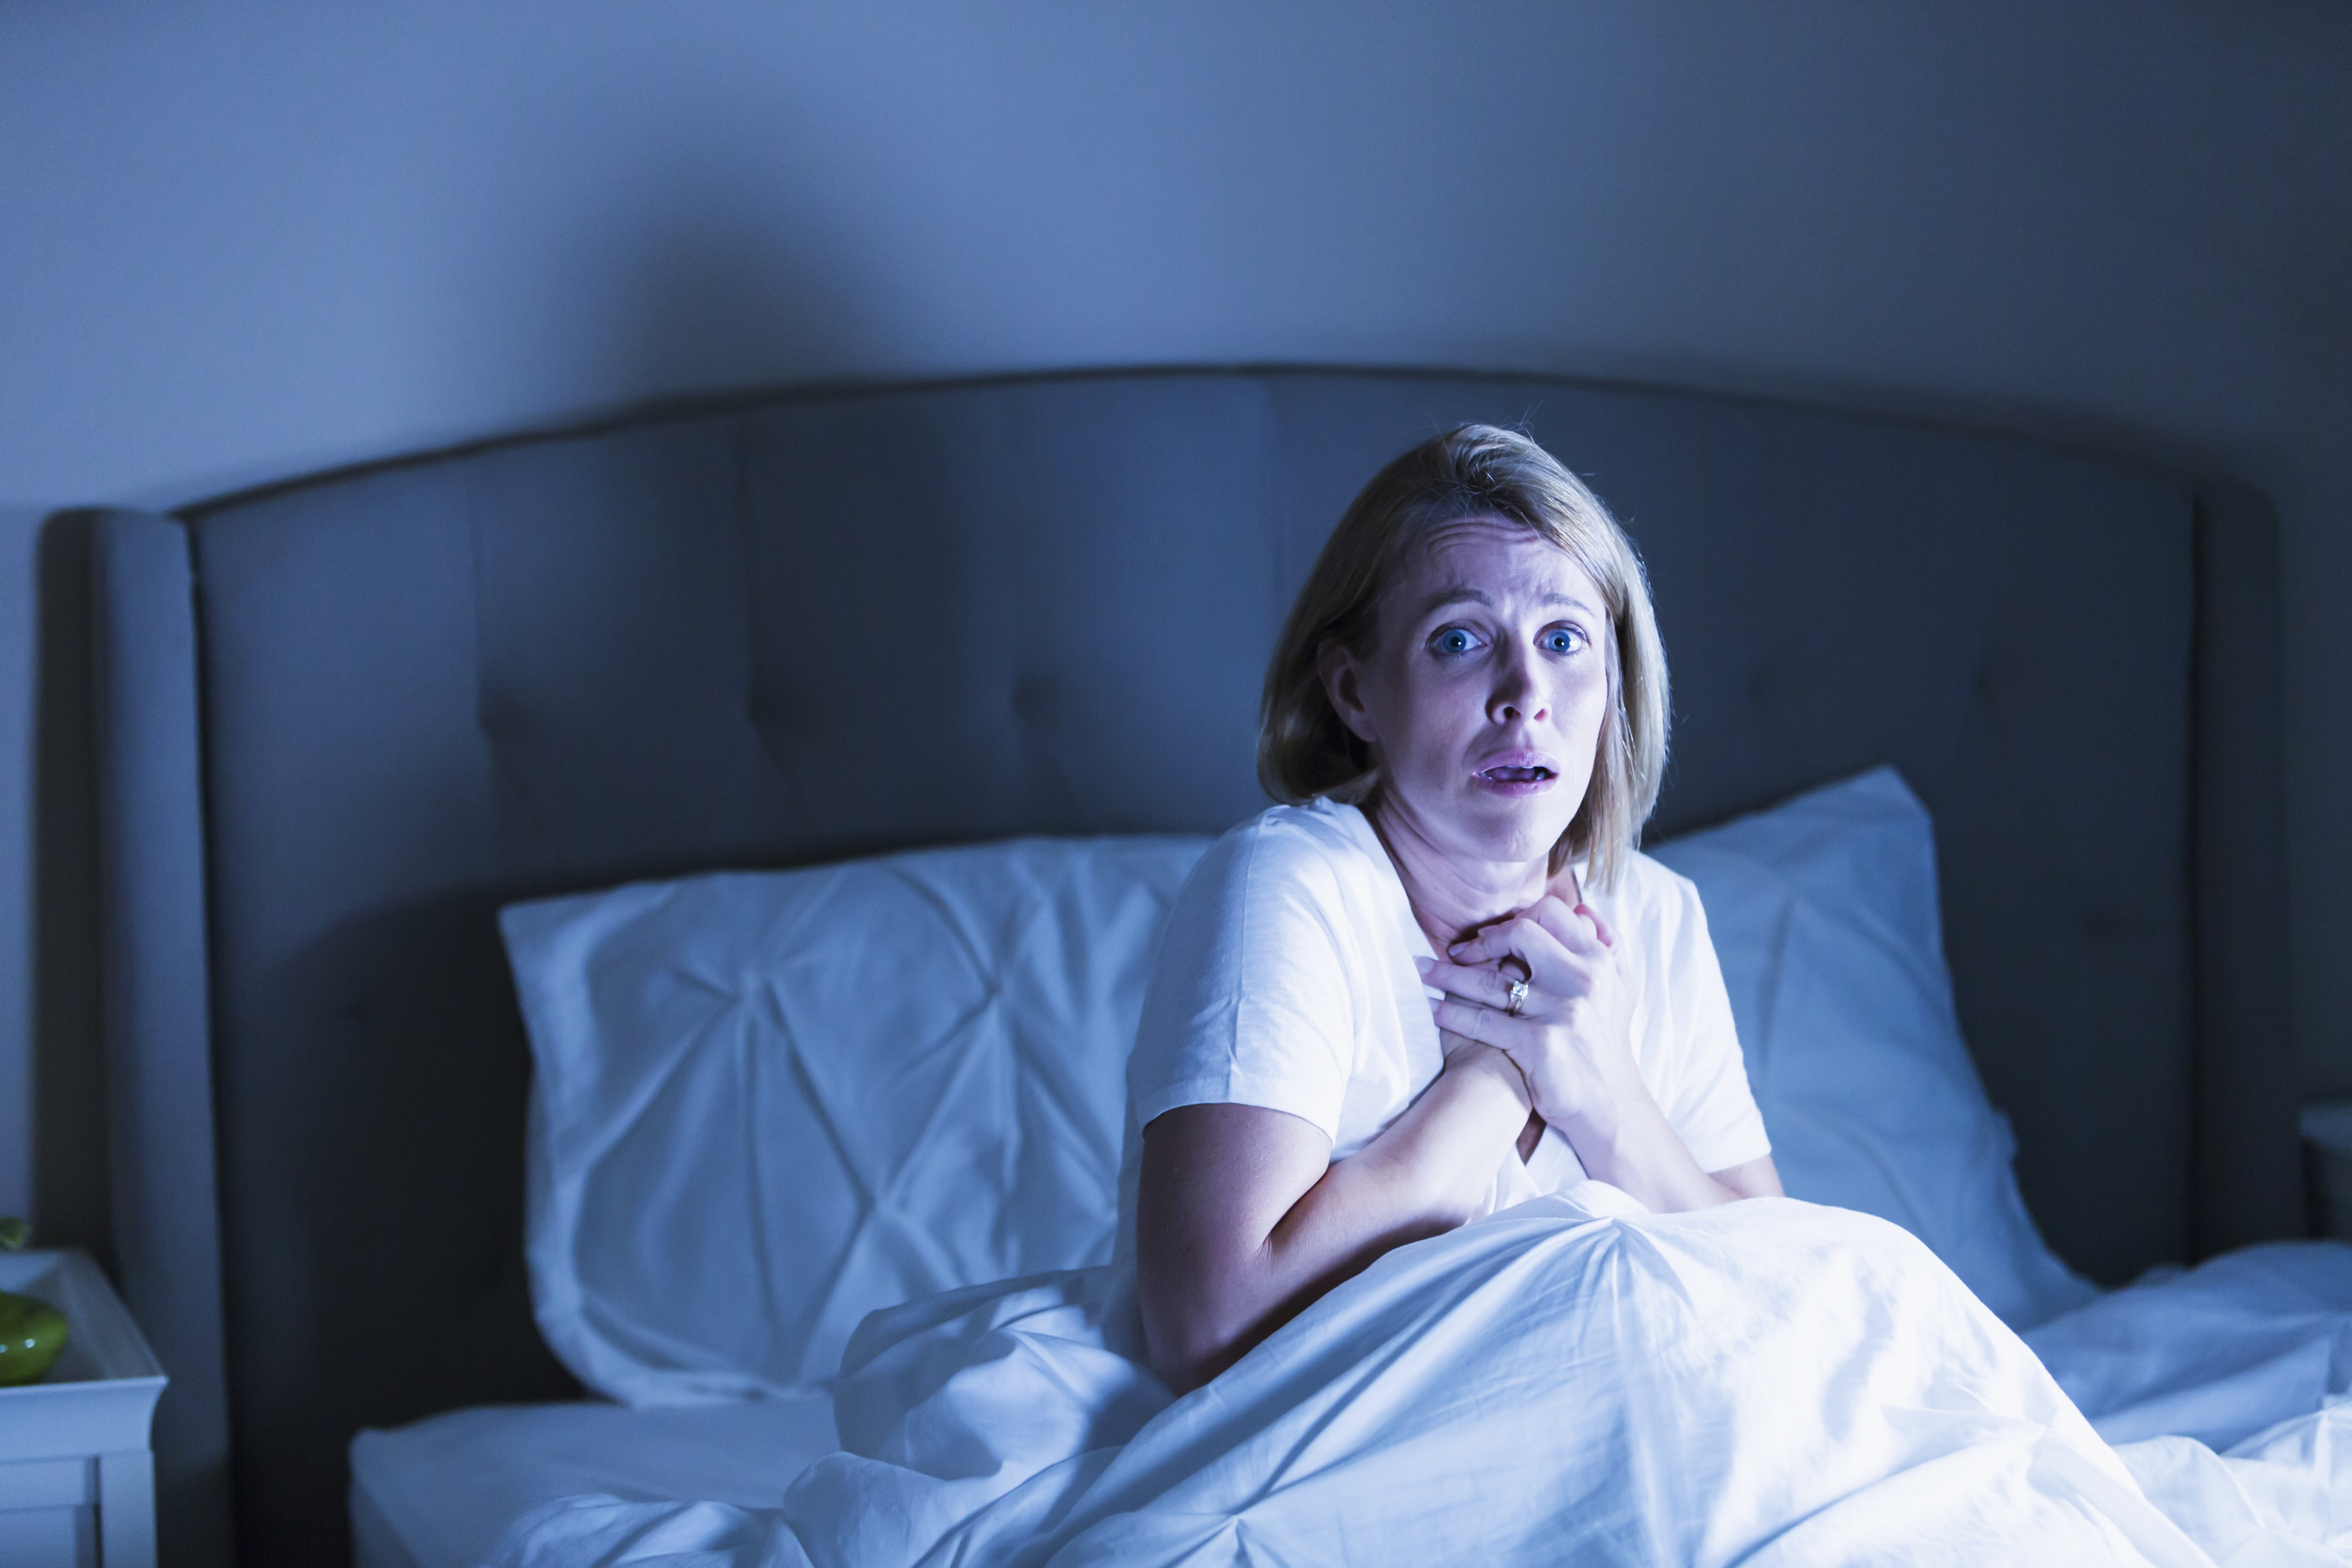 Femme au lit réveillée par quelque chose d'effrayant | Source : Getty Images